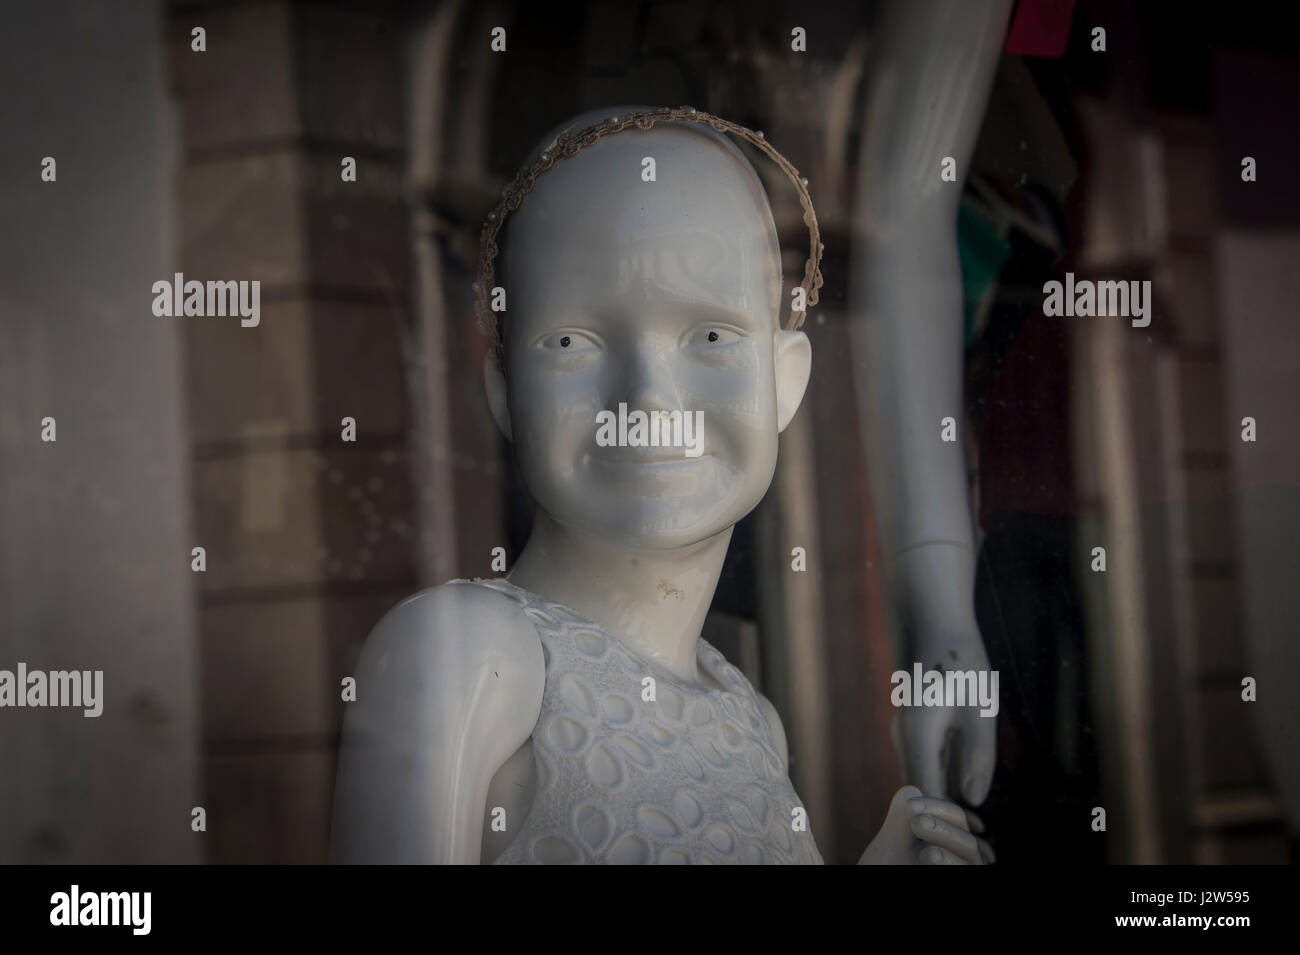 Manichino bambino in un negozio di finestra di visualizzazione Foto Stock